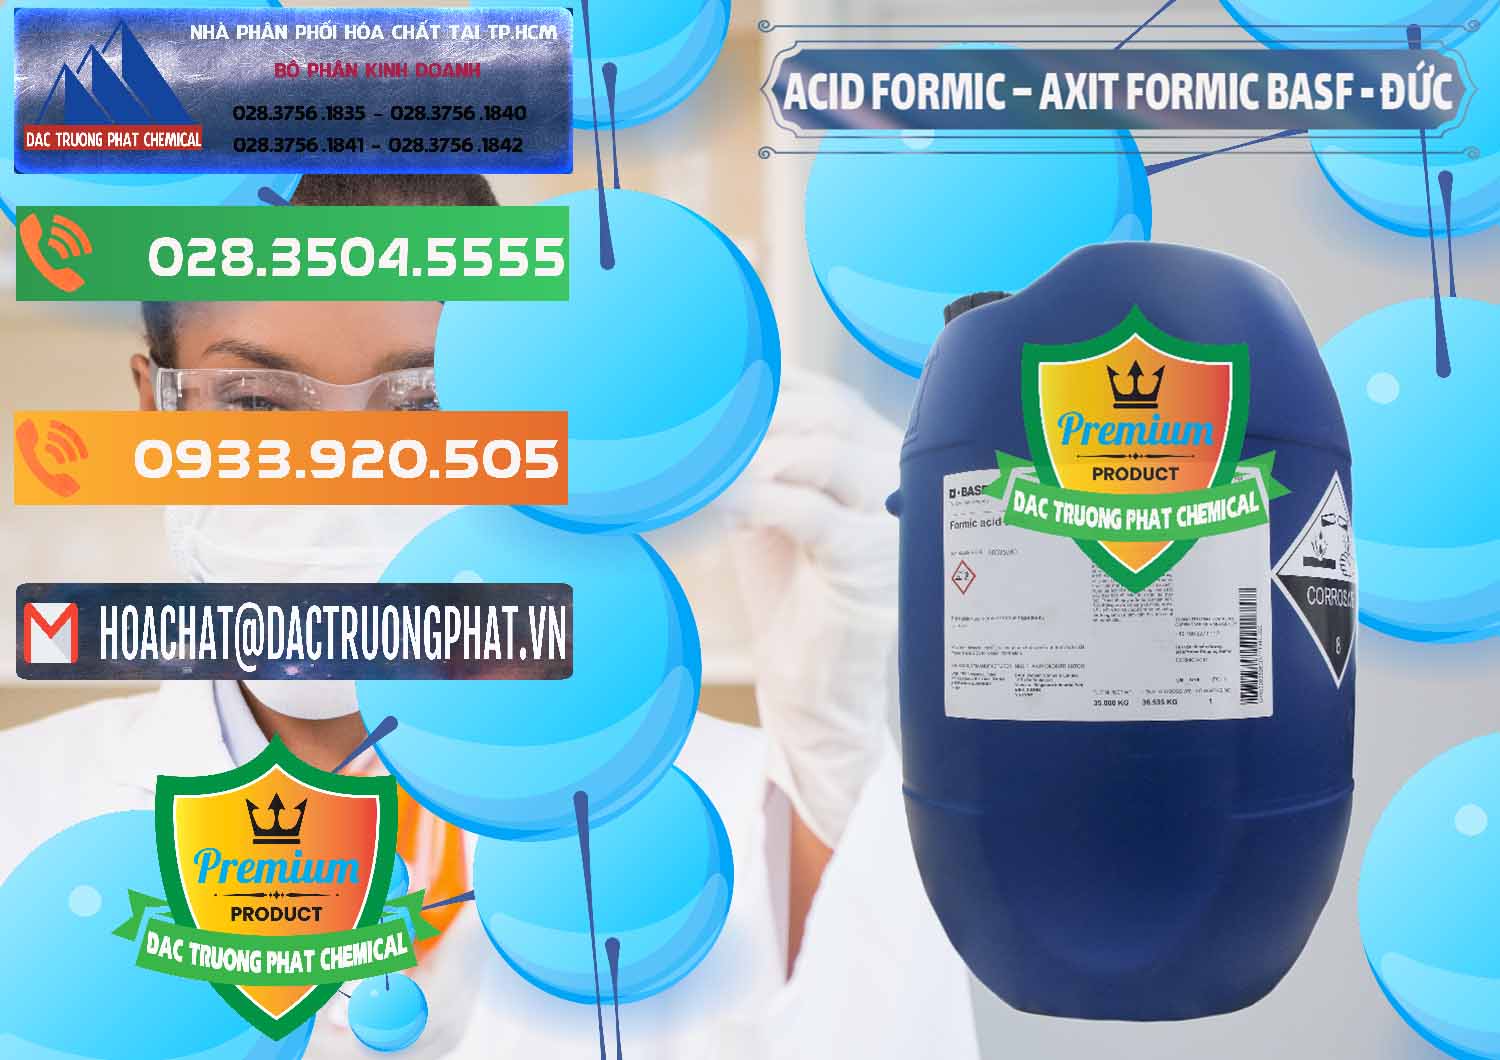 Công ty bán ( cung cấp ) Acid Formic - Axit Formic BASF Đức Germany - 0028 - Nơi bán ( phân phối ) hóa chất tại TP.HCM - hoachatxulynuoc.com.vn